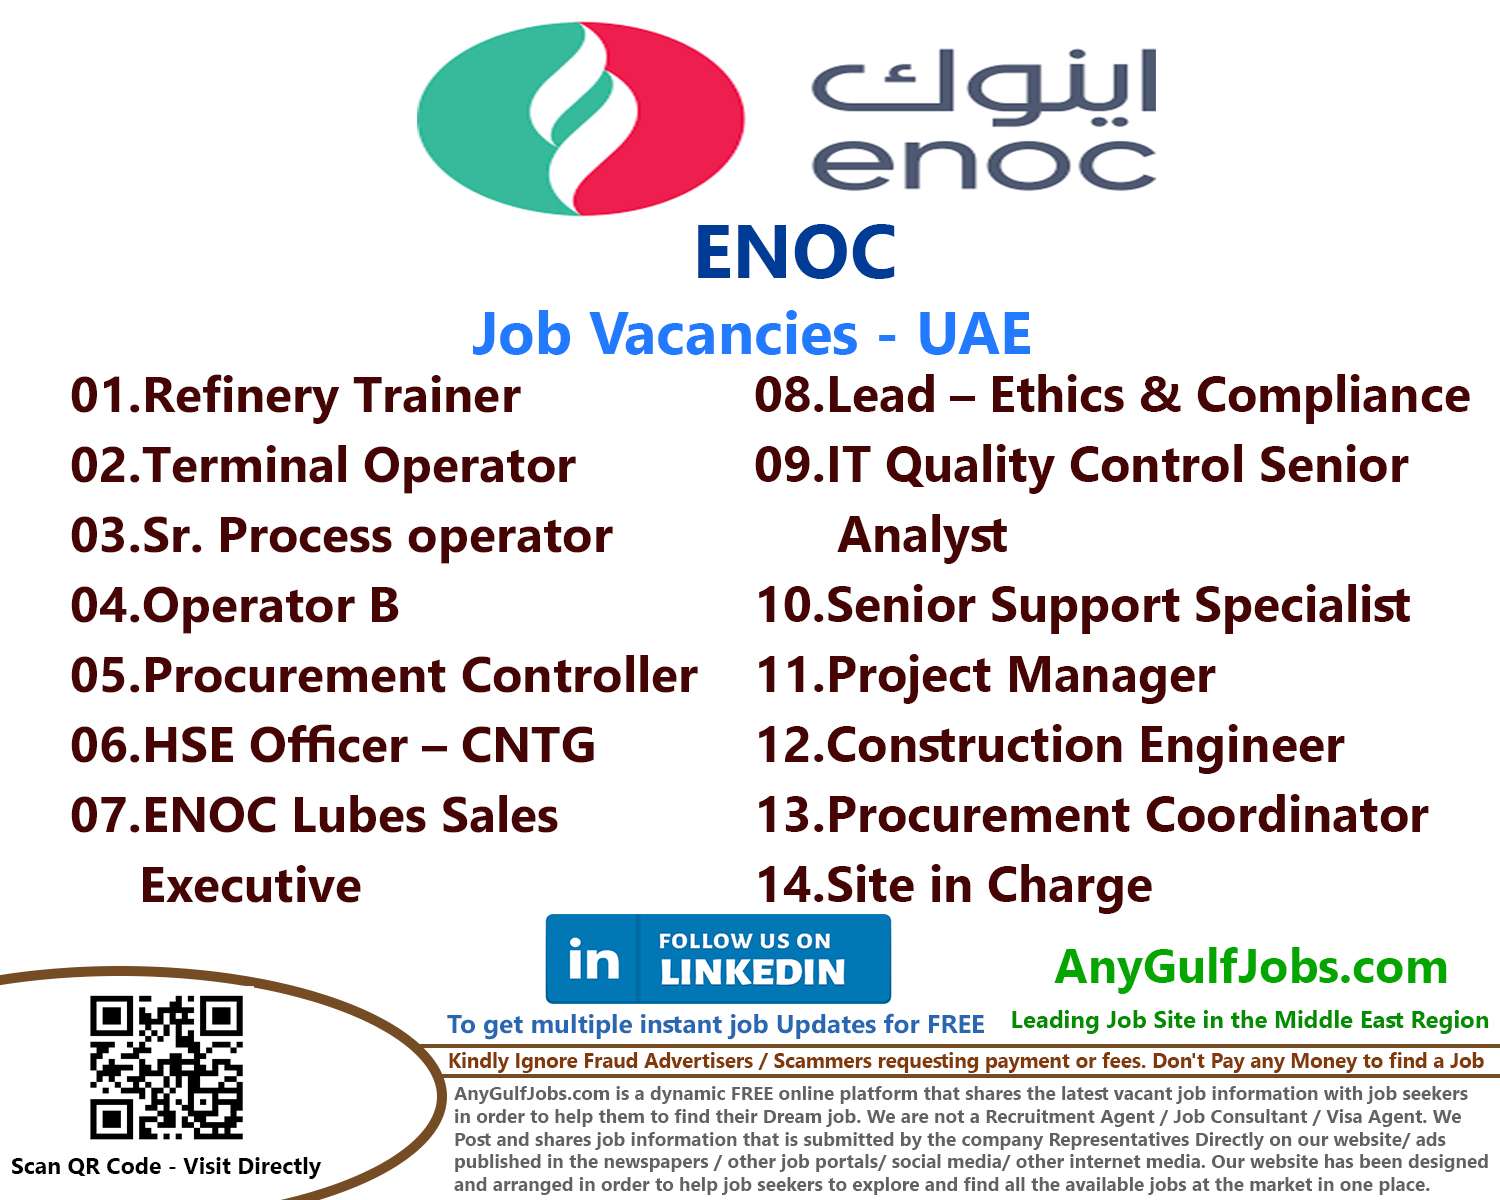 List of ENOC Jobs - Dubai, UAE